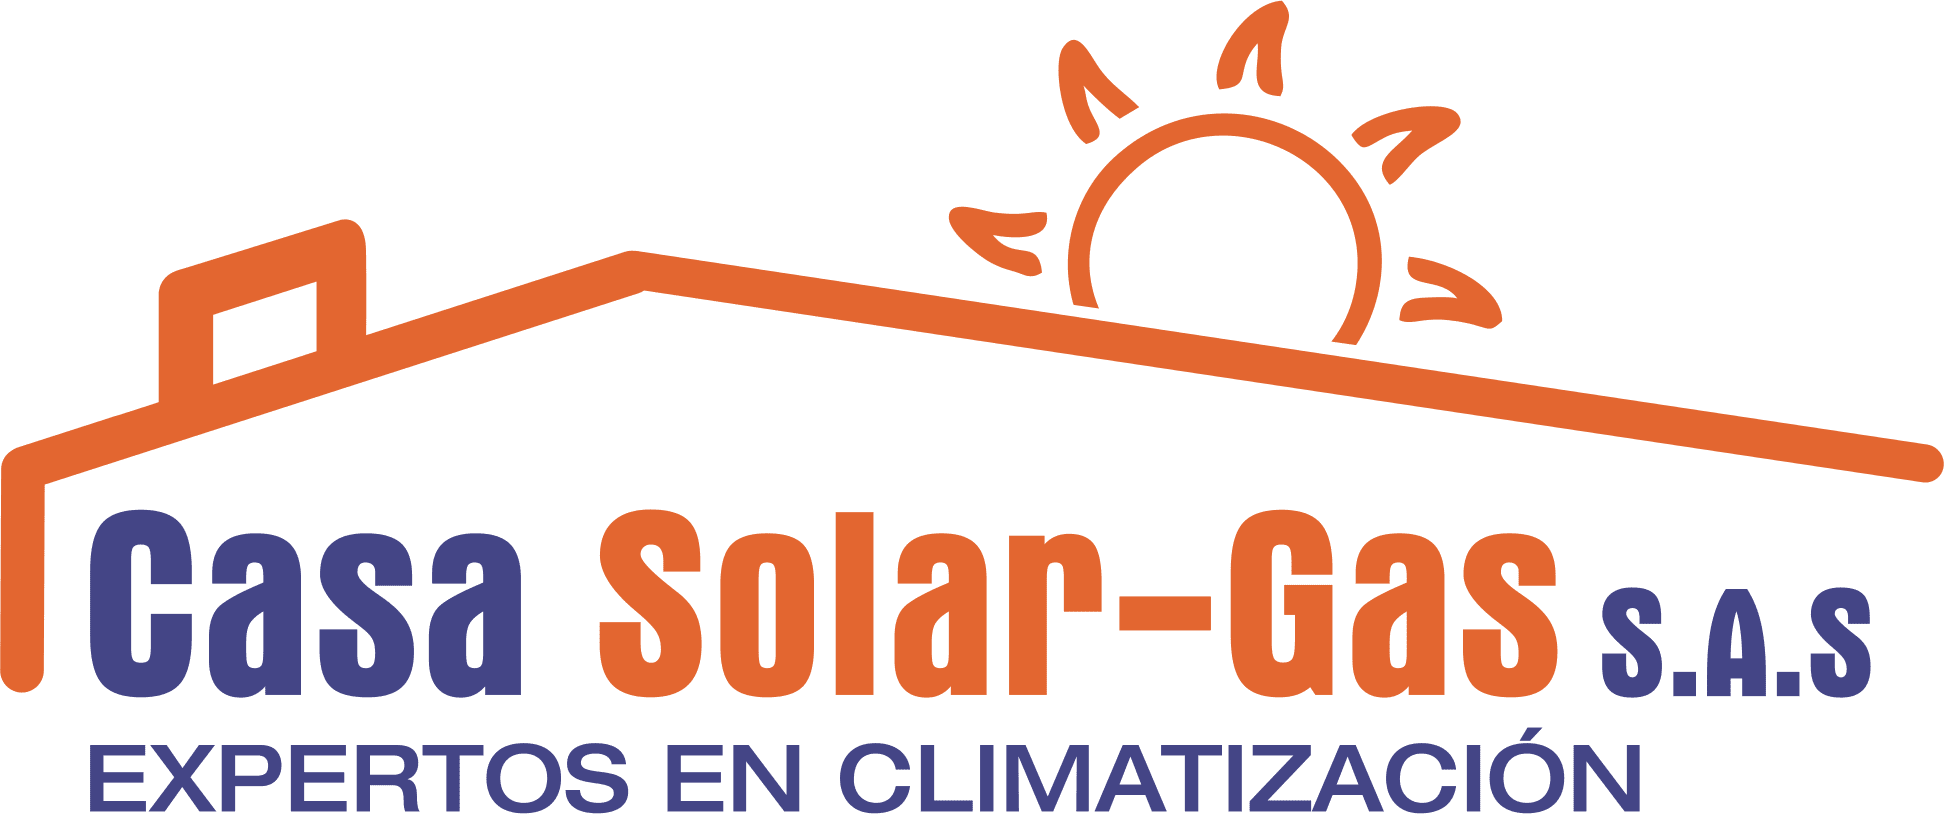 Casa Solar-Gas